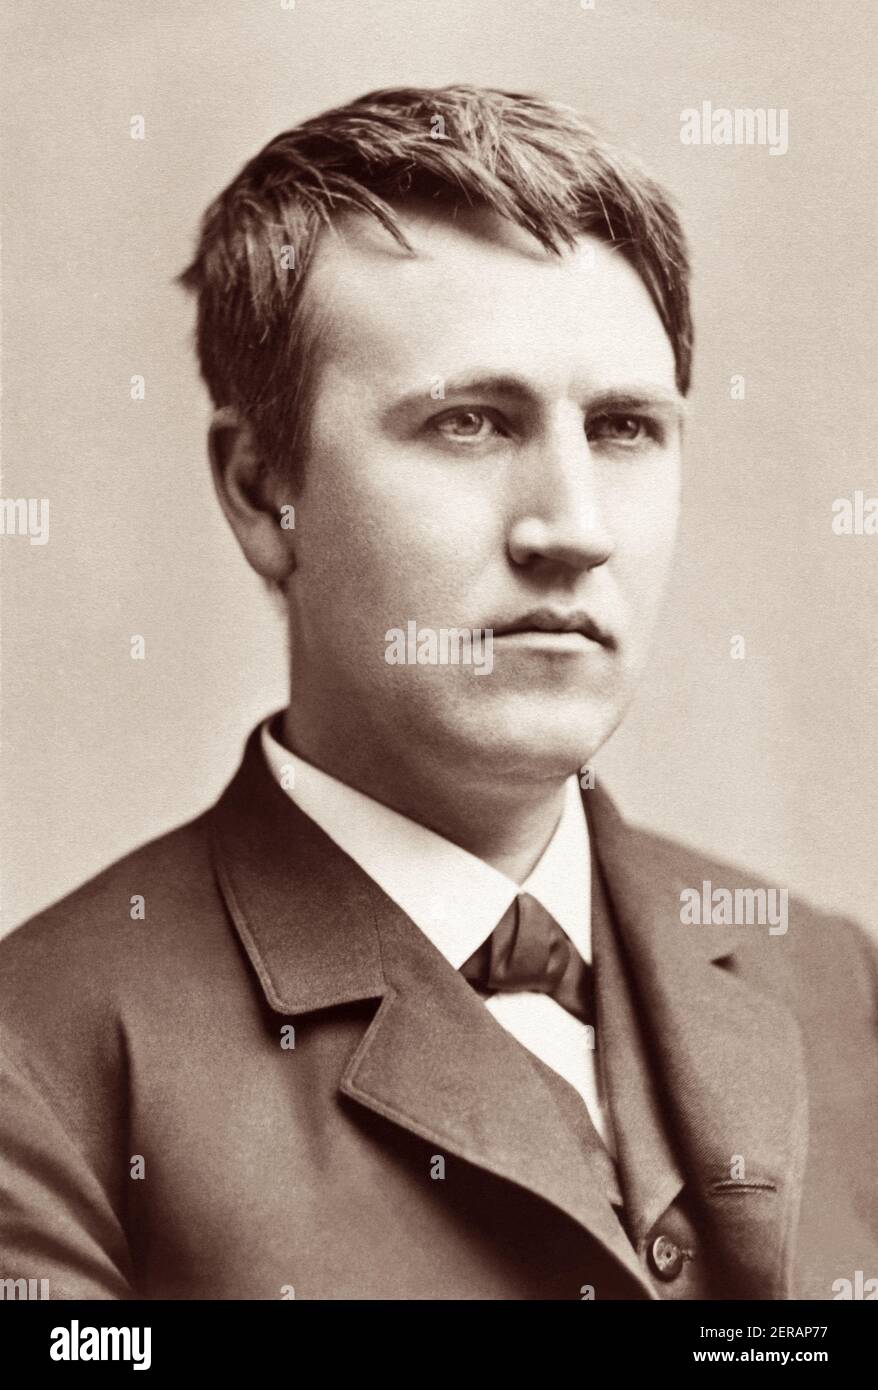 El joven Thomas Alva Edison (1847–1931), inventor y empresario estadounidense que ha sido descrito como el mayor inventor de Estados Unidos, en un retrato de 1870. Foto de stock